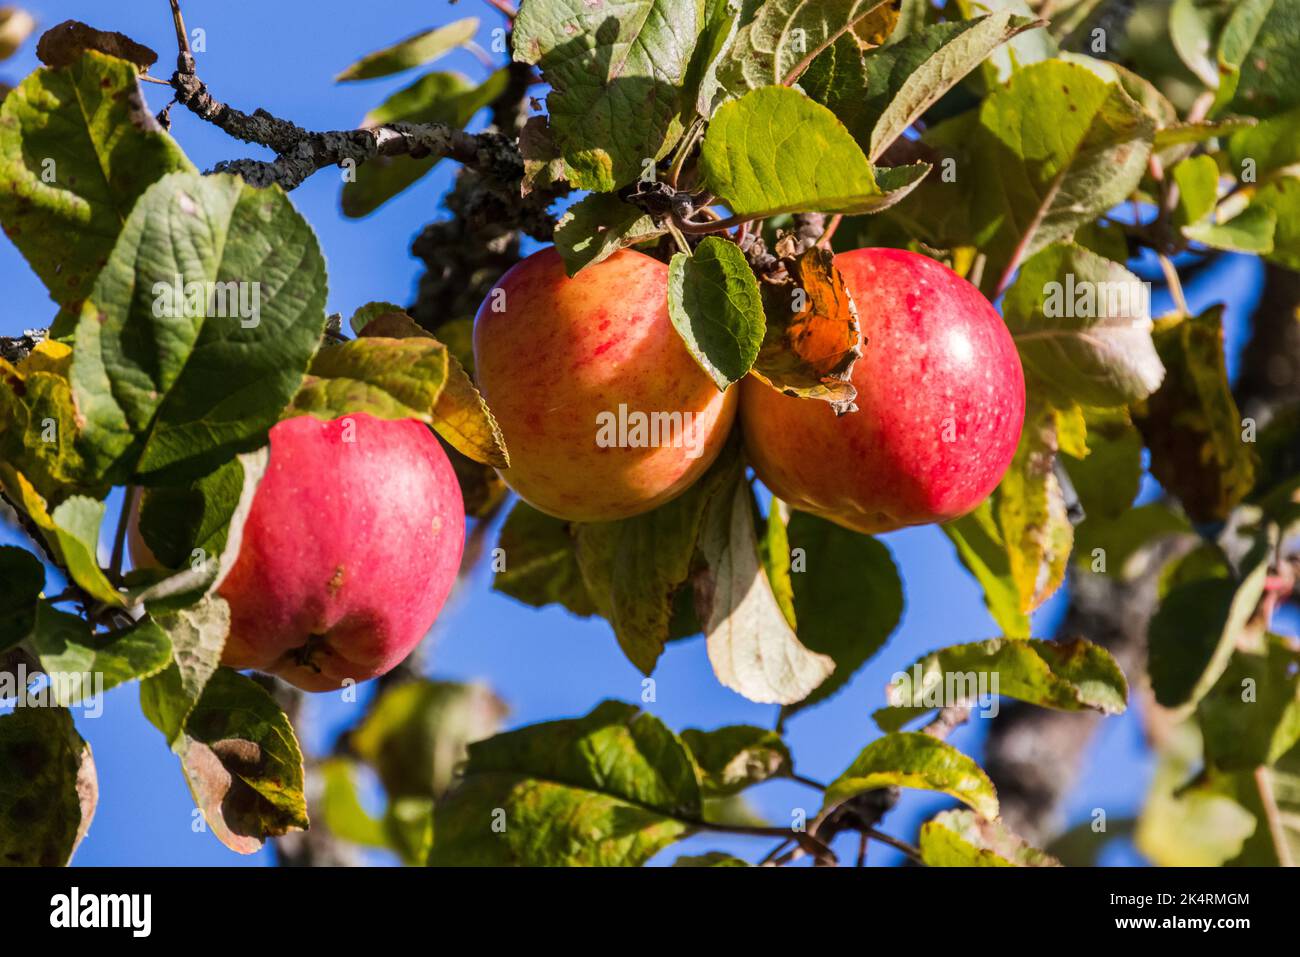 Les pommes vertes rouges poussent sur une branche d'un pommier lors d'une journée ensoleillée, photo naturelle en gros plan. Fond de nourriture biologique Banque D'Images